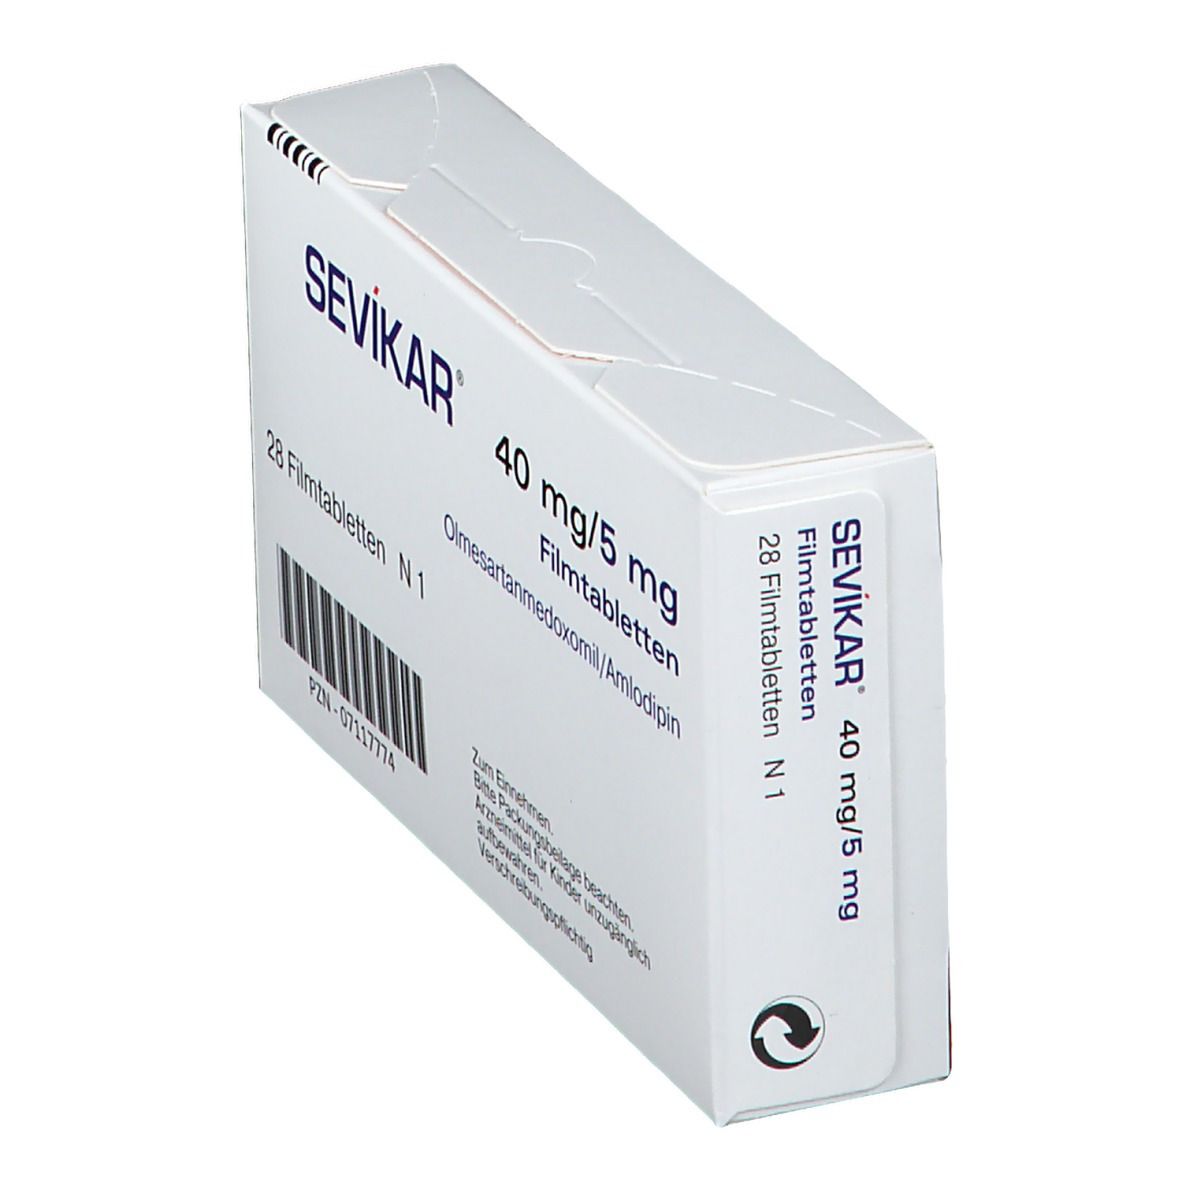 SEVIKAR® 40 mg/5 mg